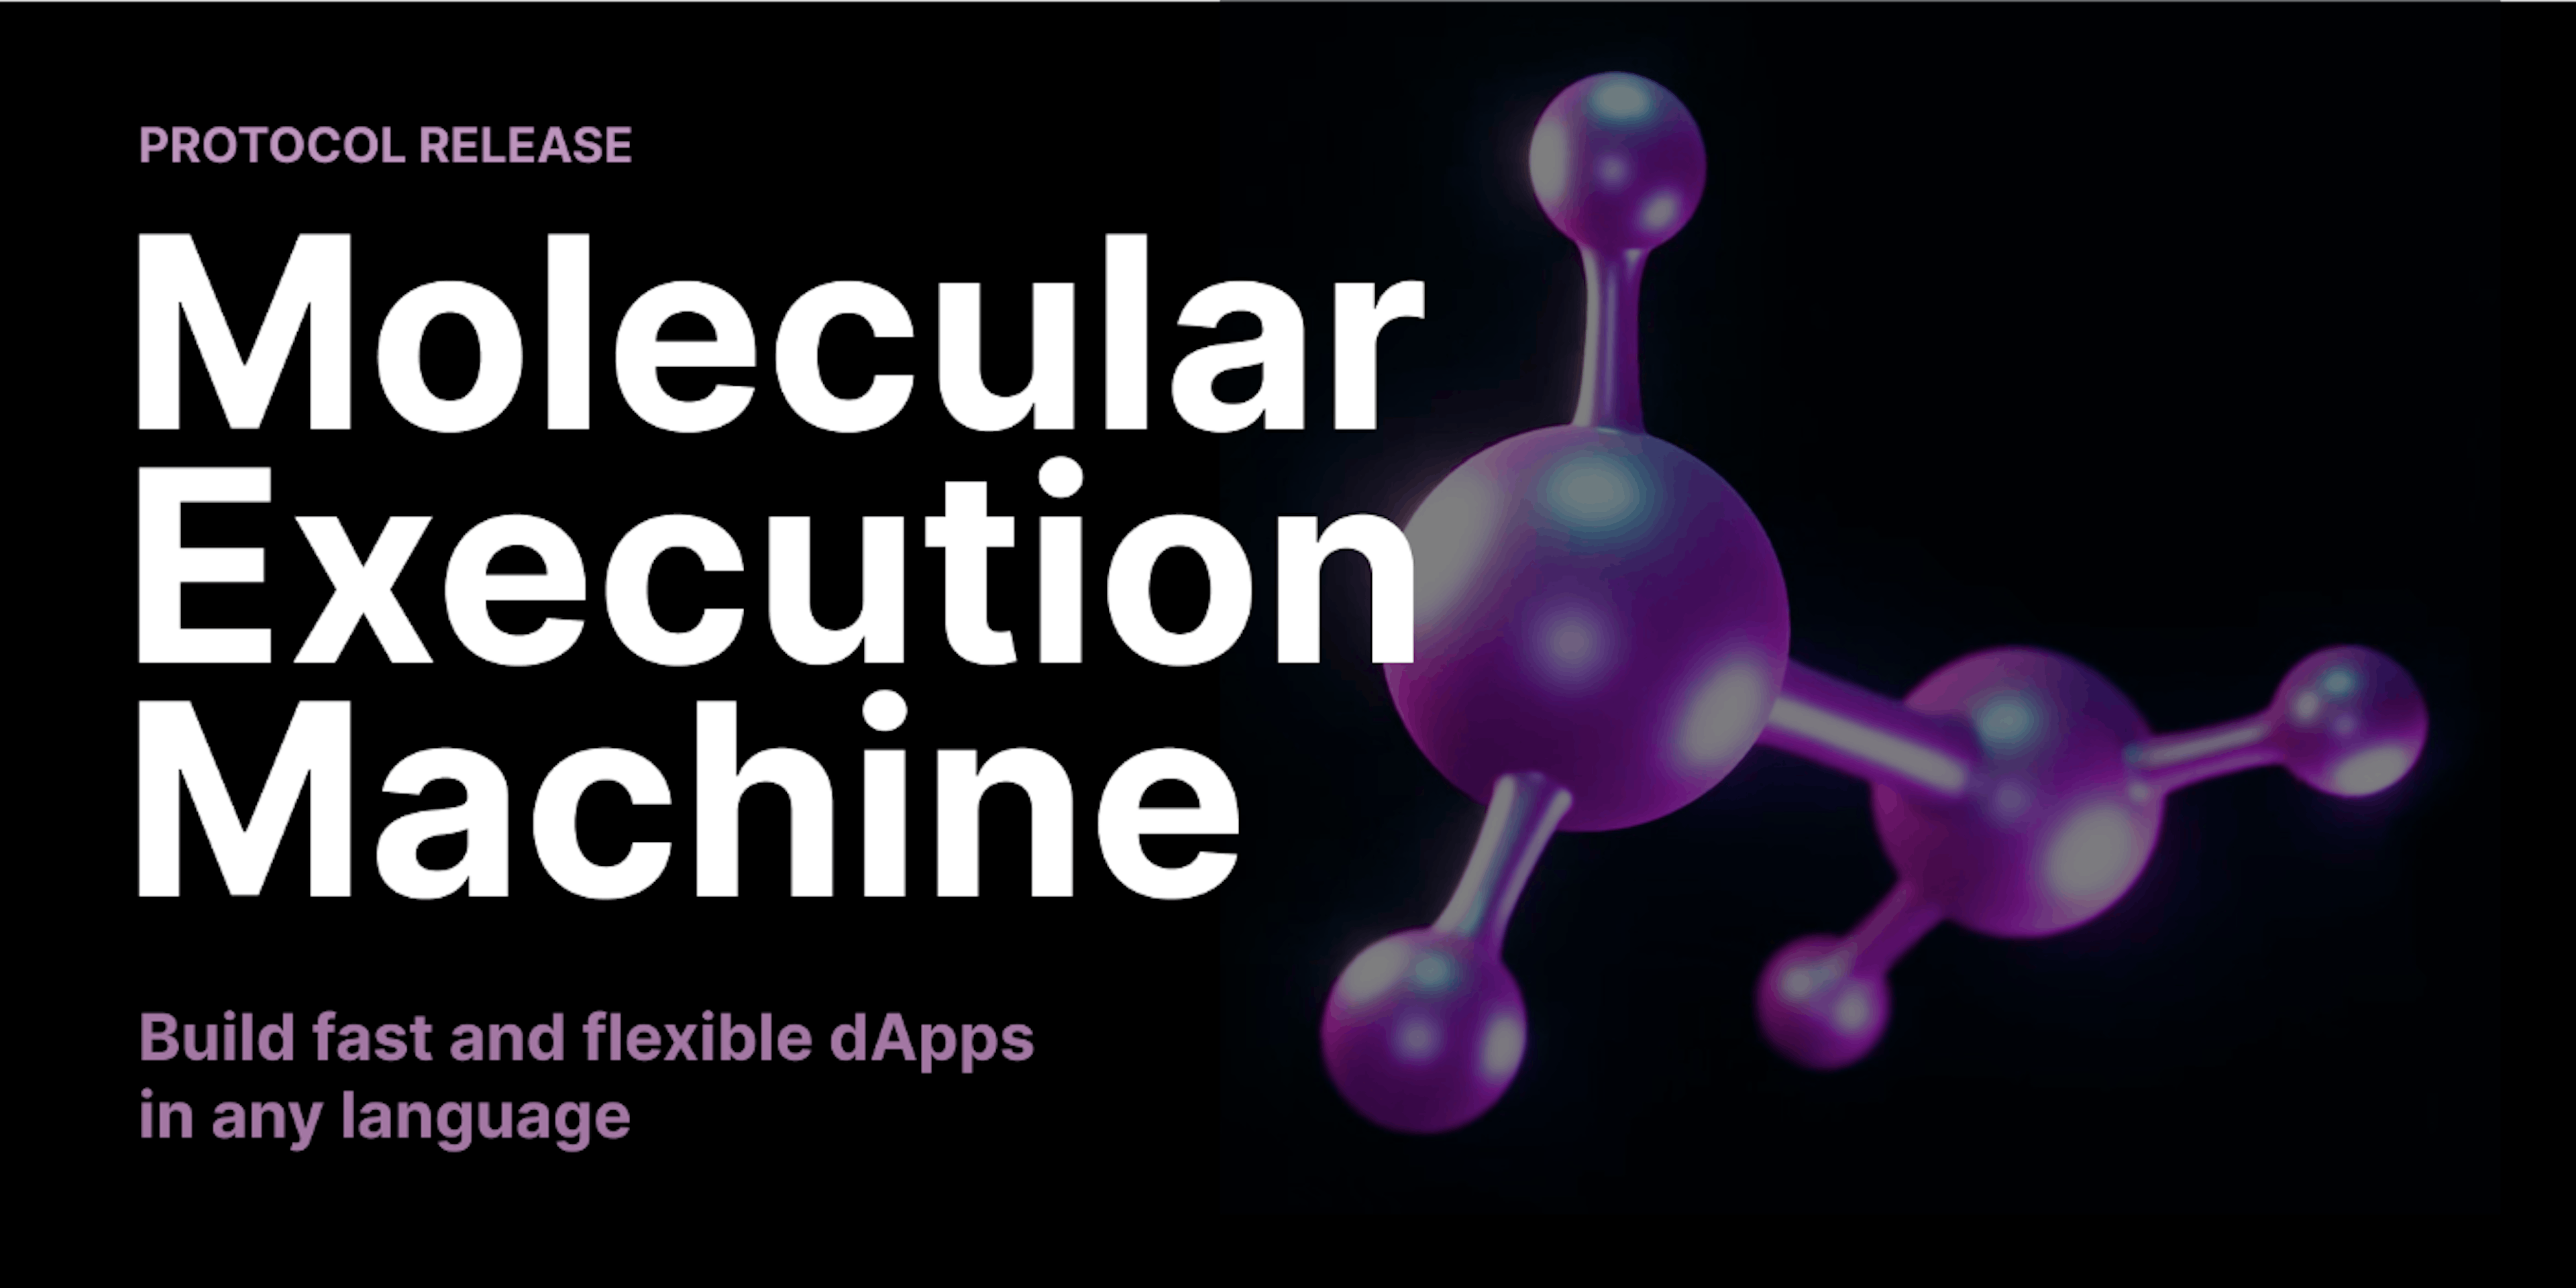 featured image - Apresentando computação flexível e escalável com a máquina de execução molecular da Decent Land Labs